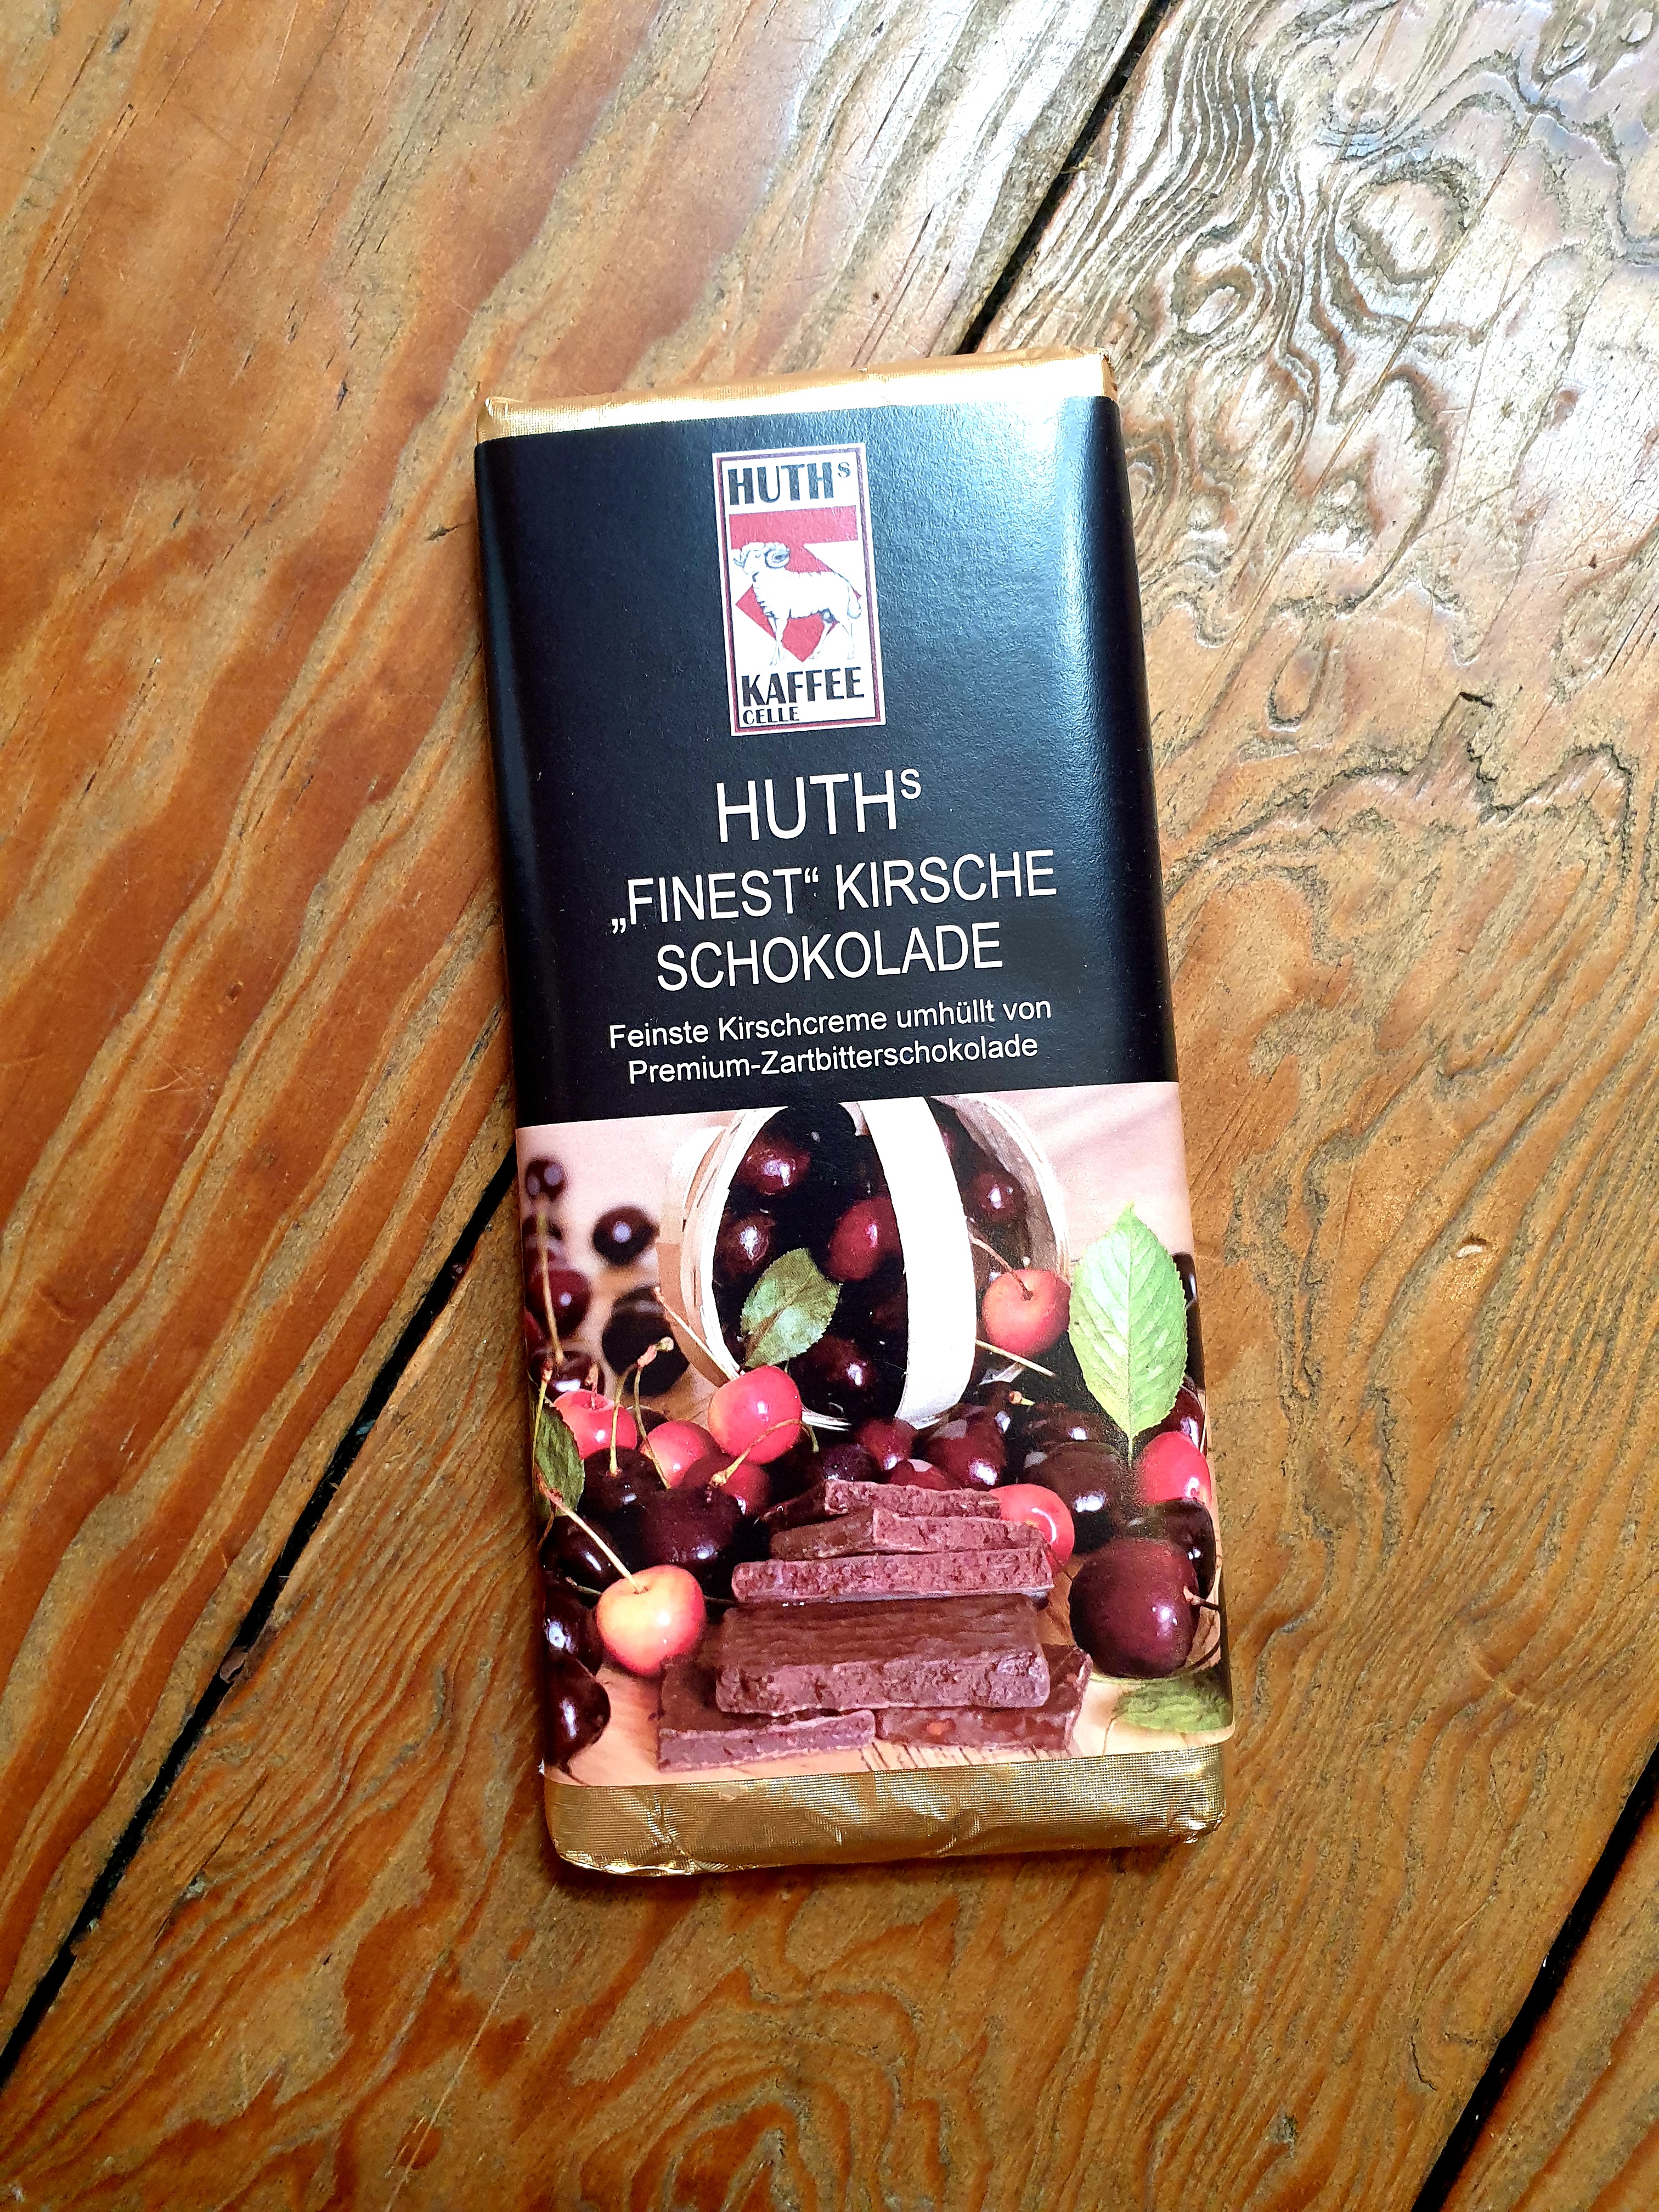 Huth's Schokolade "Finest" Kirsche  